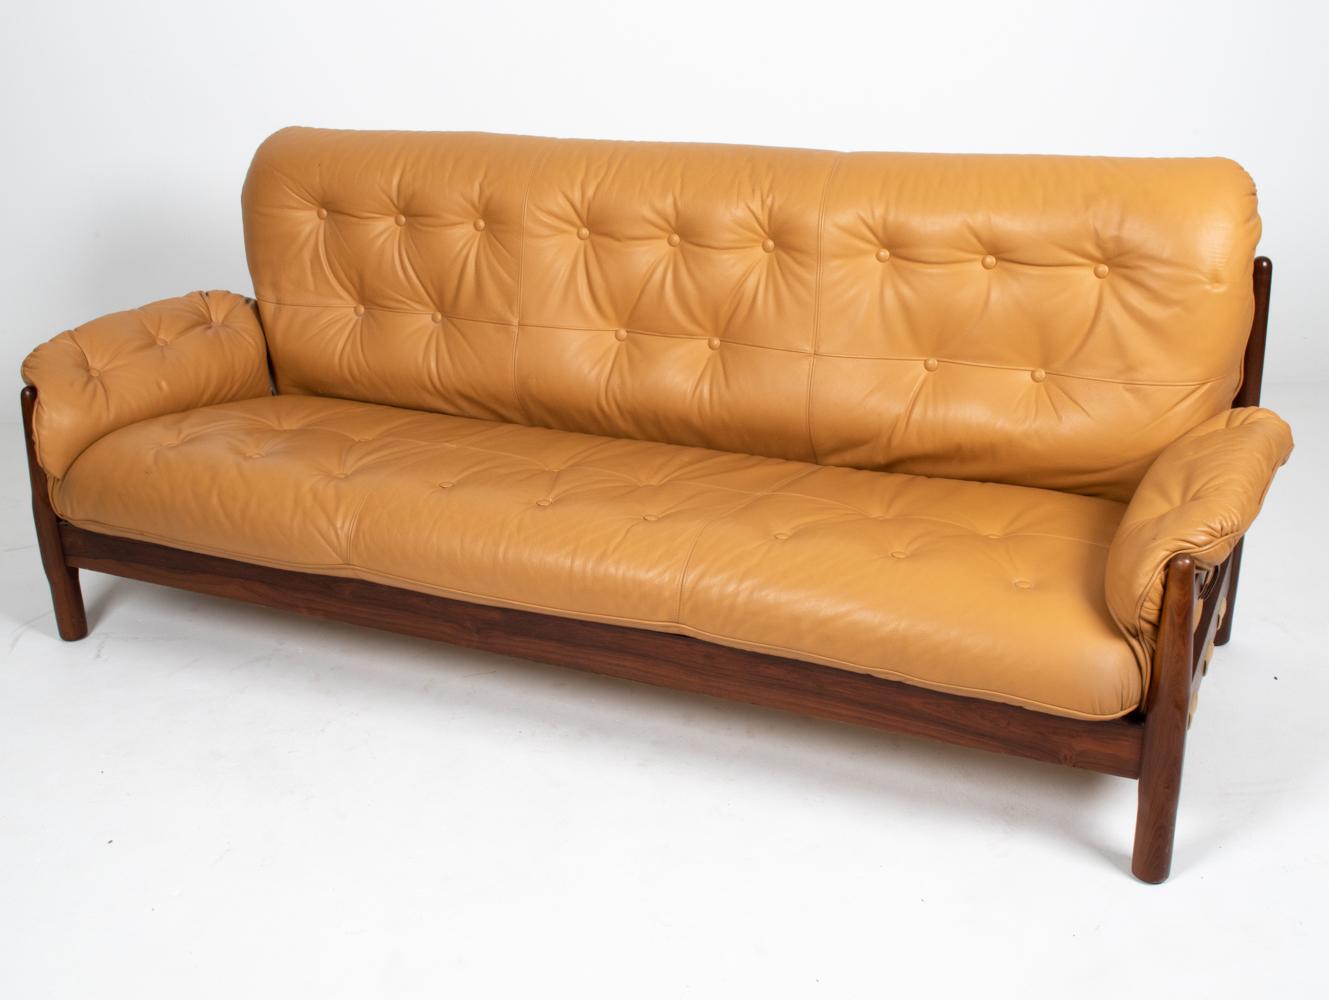 Großzügige Proportionen und luxuriöse Oberflächen zeichnen dieses fabelhafte brasilianische Sofa der Moderne aus. Das Gestell ist aus wunderschönem massivem Palisanderholz gefertigt und hat eine interessante skulpturale Fase an den Beinen. Die